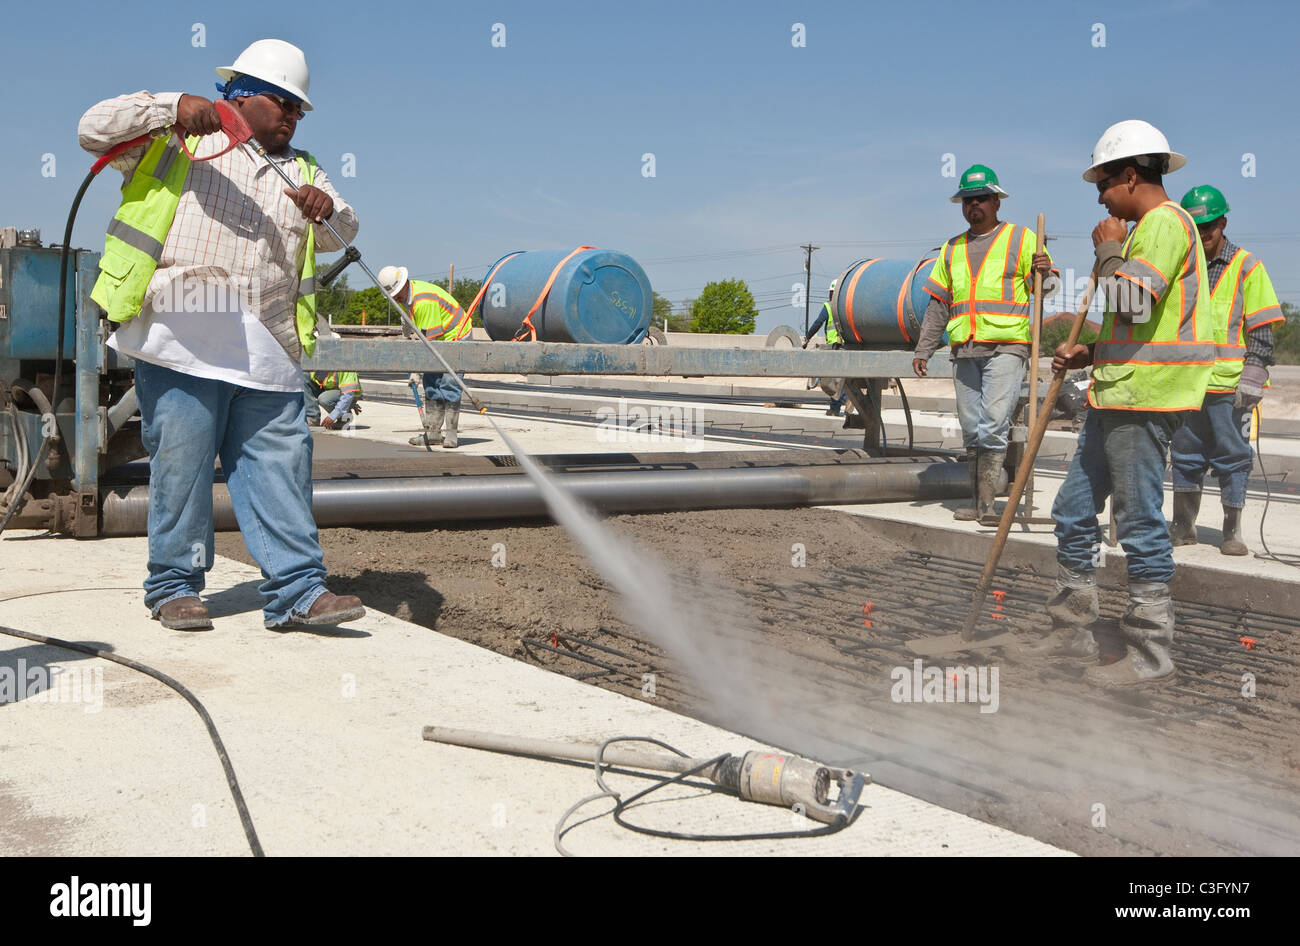 Autoroute de l'homme hispanique au cours de l'eau sprays travailleur le béton fraîchement coulé pour assurer la bonne température Banque D'Images